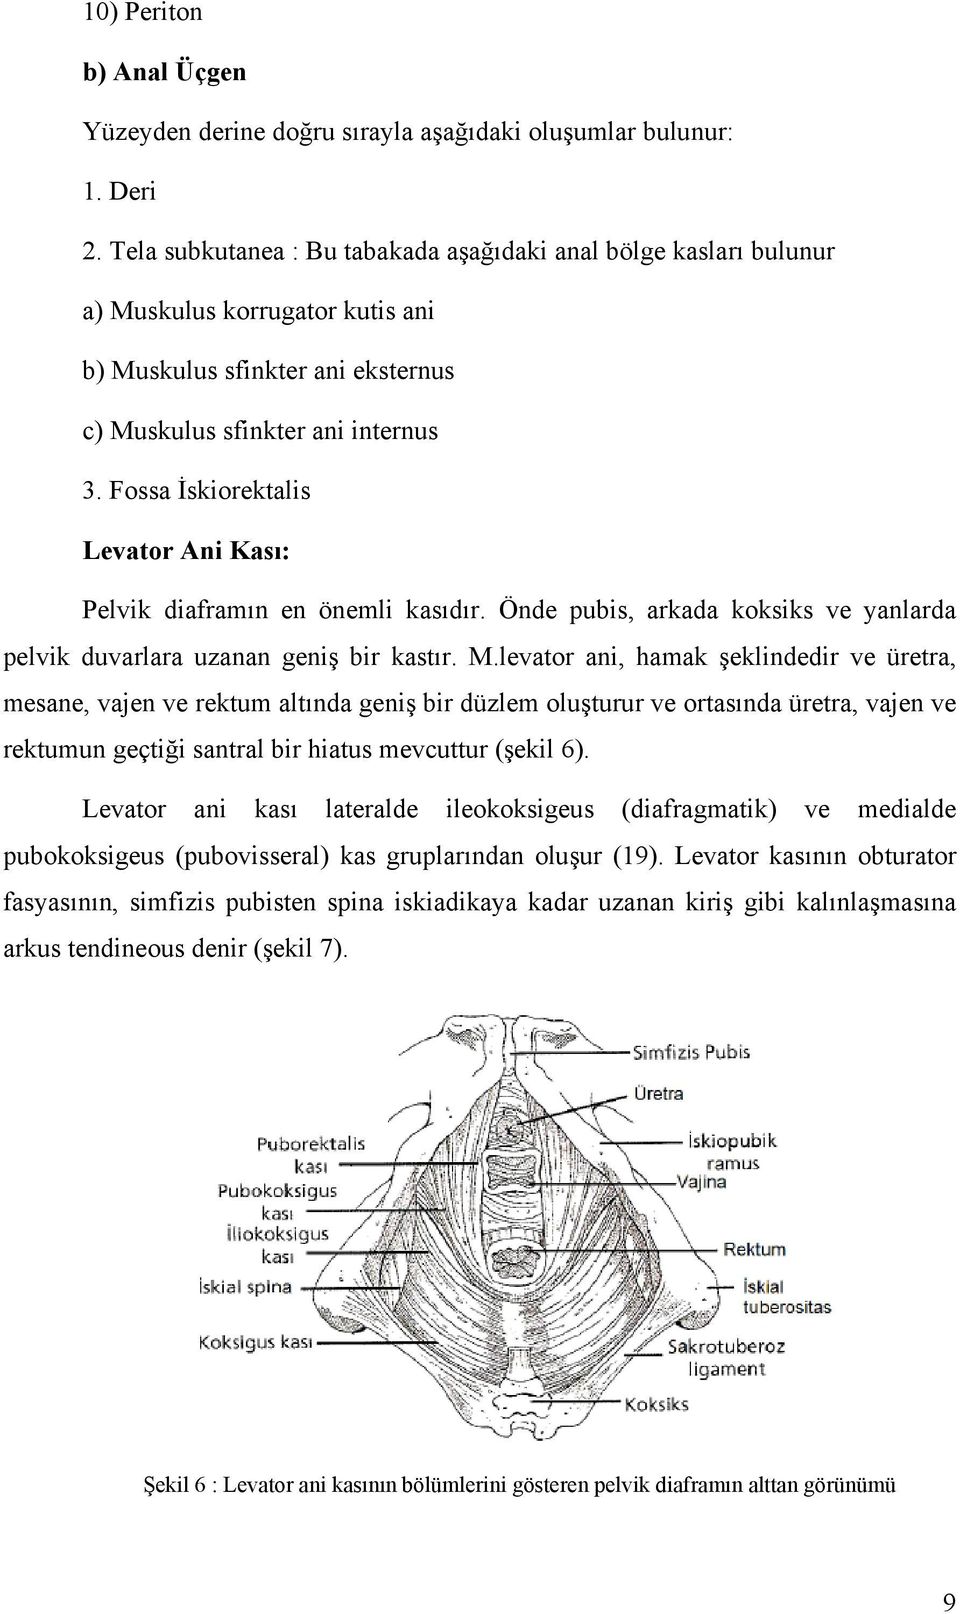 Fossa İskiorektalis Levator Ani Kası: Pelvik diaframın en önemli kasıdır. Önde pubis, arkada koksiks ve yanlarda pelvik duvarlara uzanan geniş bir kastır. M.